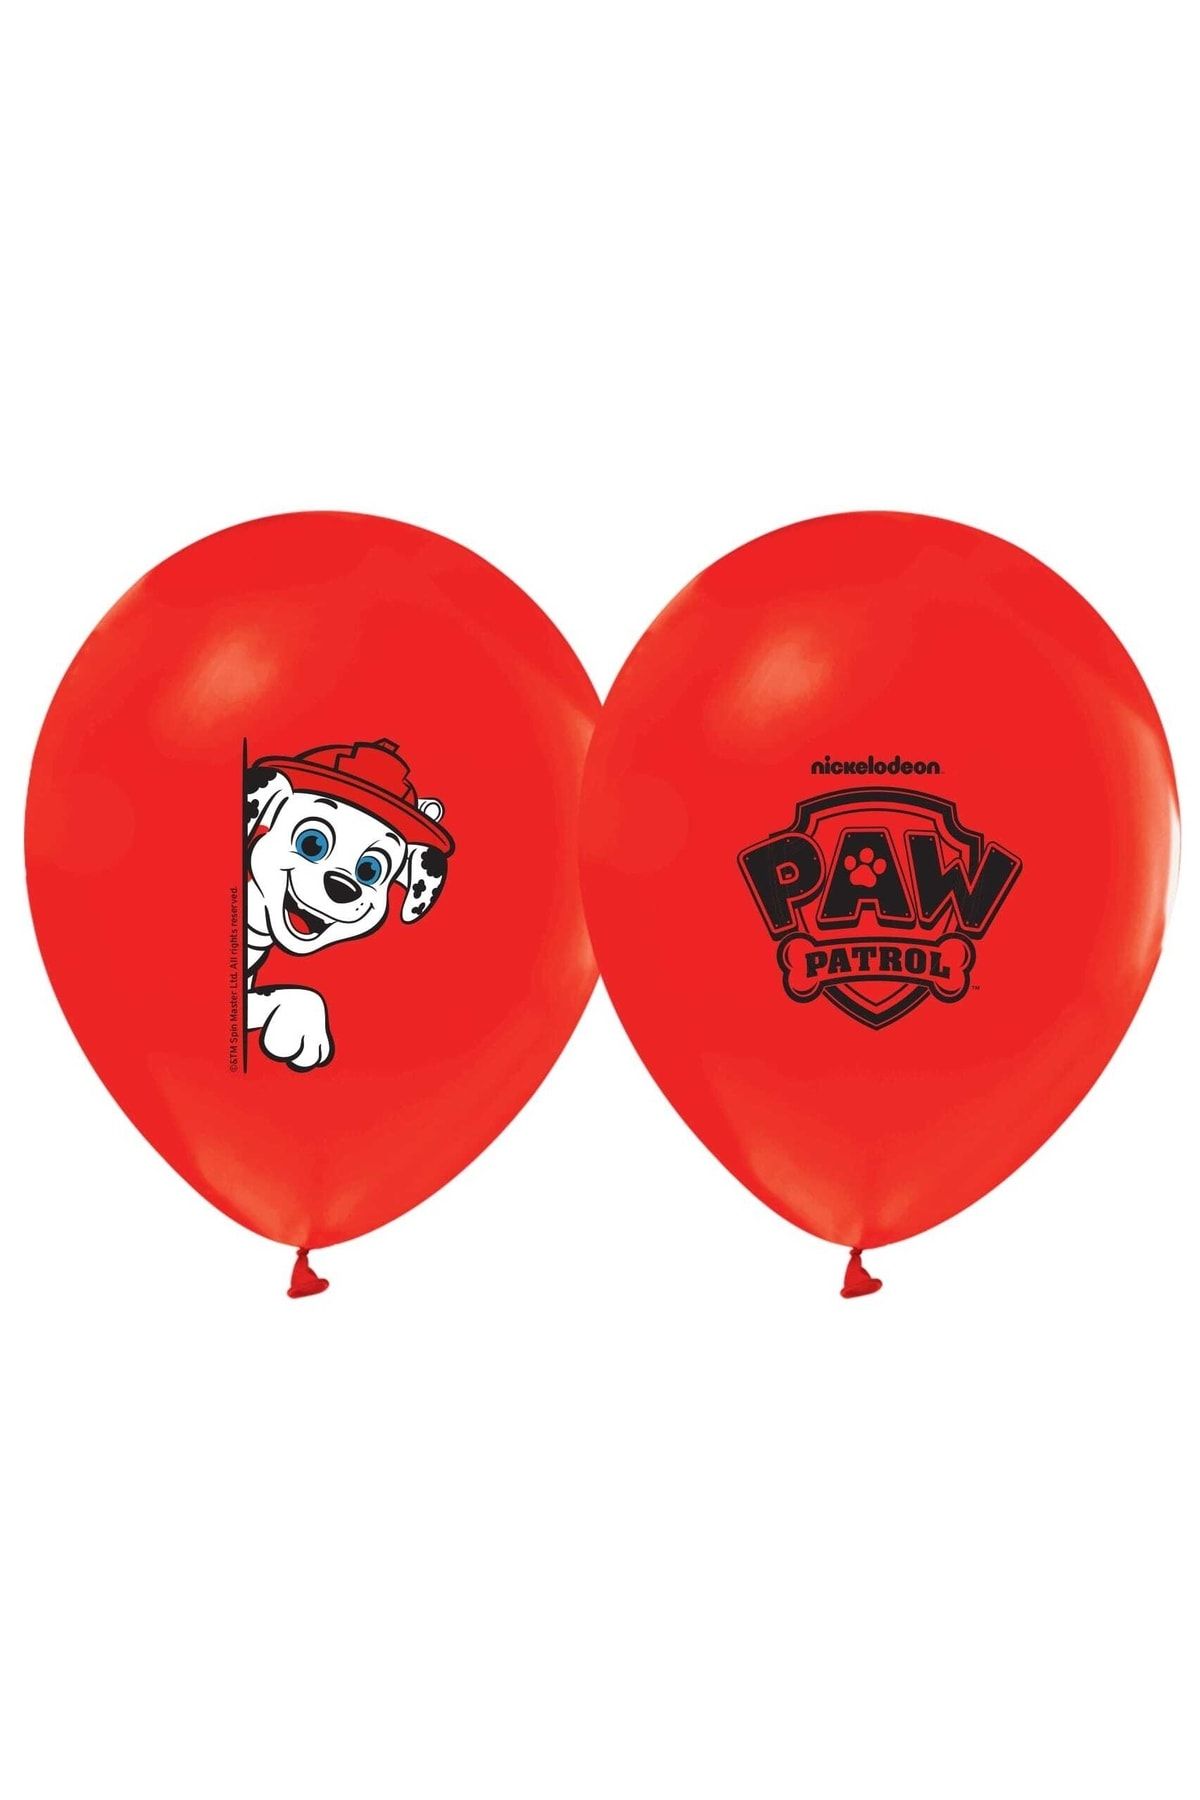 PAW PATROL Baskılı Balon Kırmızı 5 Adet